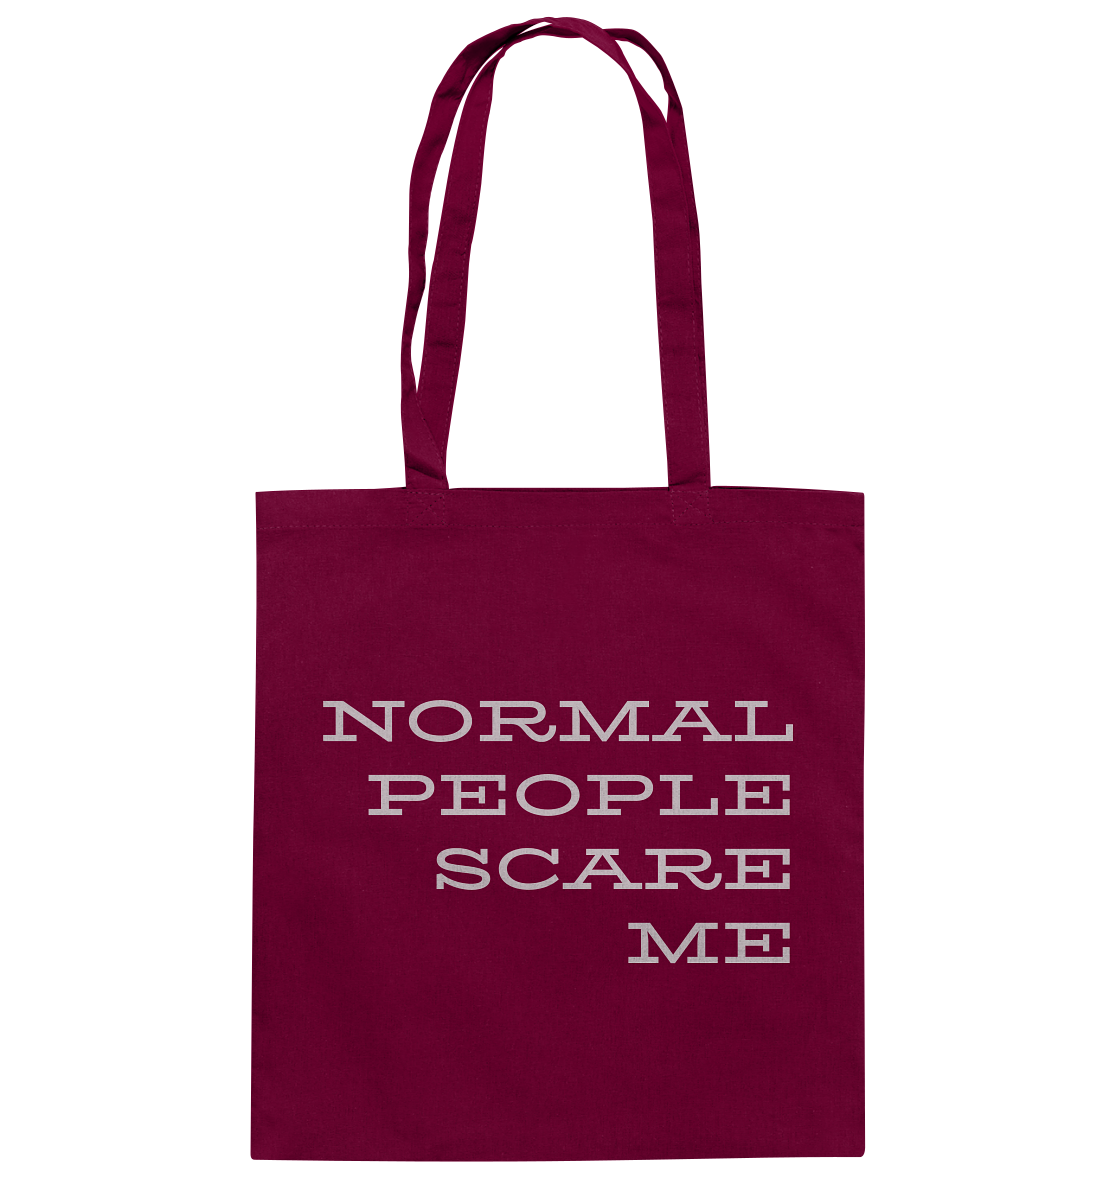 Stoffbeutel mit langen Henkeln, Aufdruck "Normal people scare me", rot